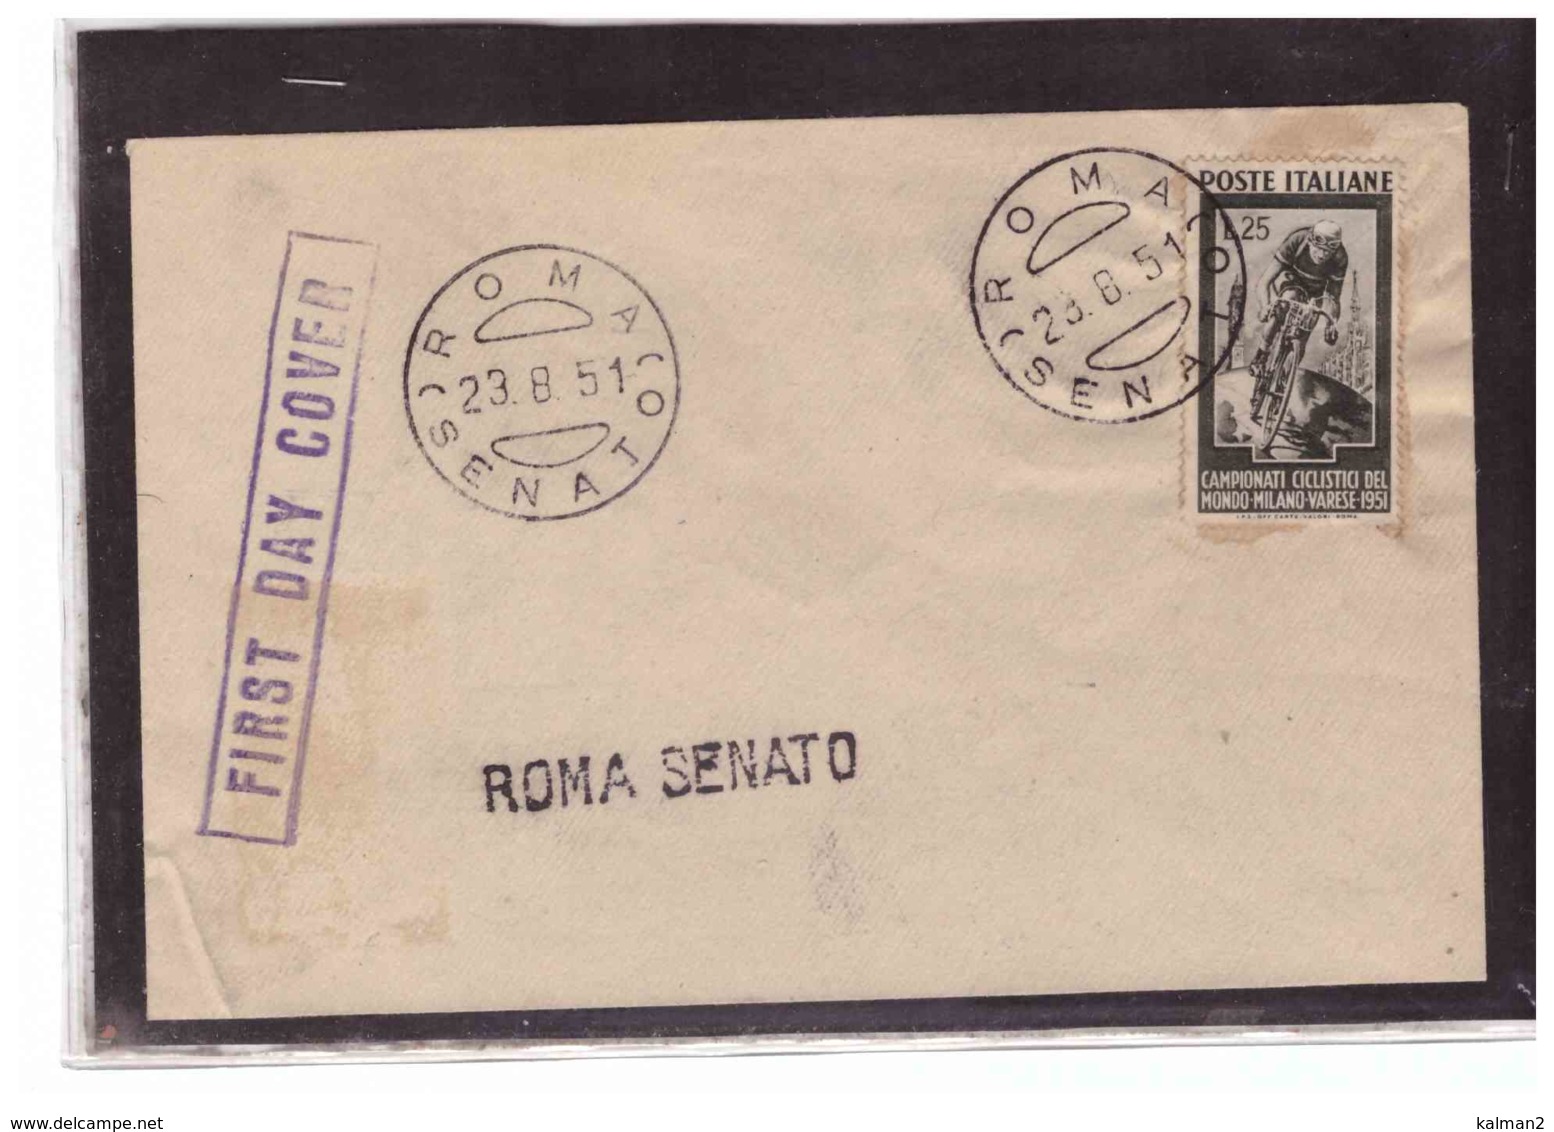 C93    -  ROMA SENATO 23.8.1951   /   FDC  CAMPIONATI MONDIALI DI CICLISMO - FDC